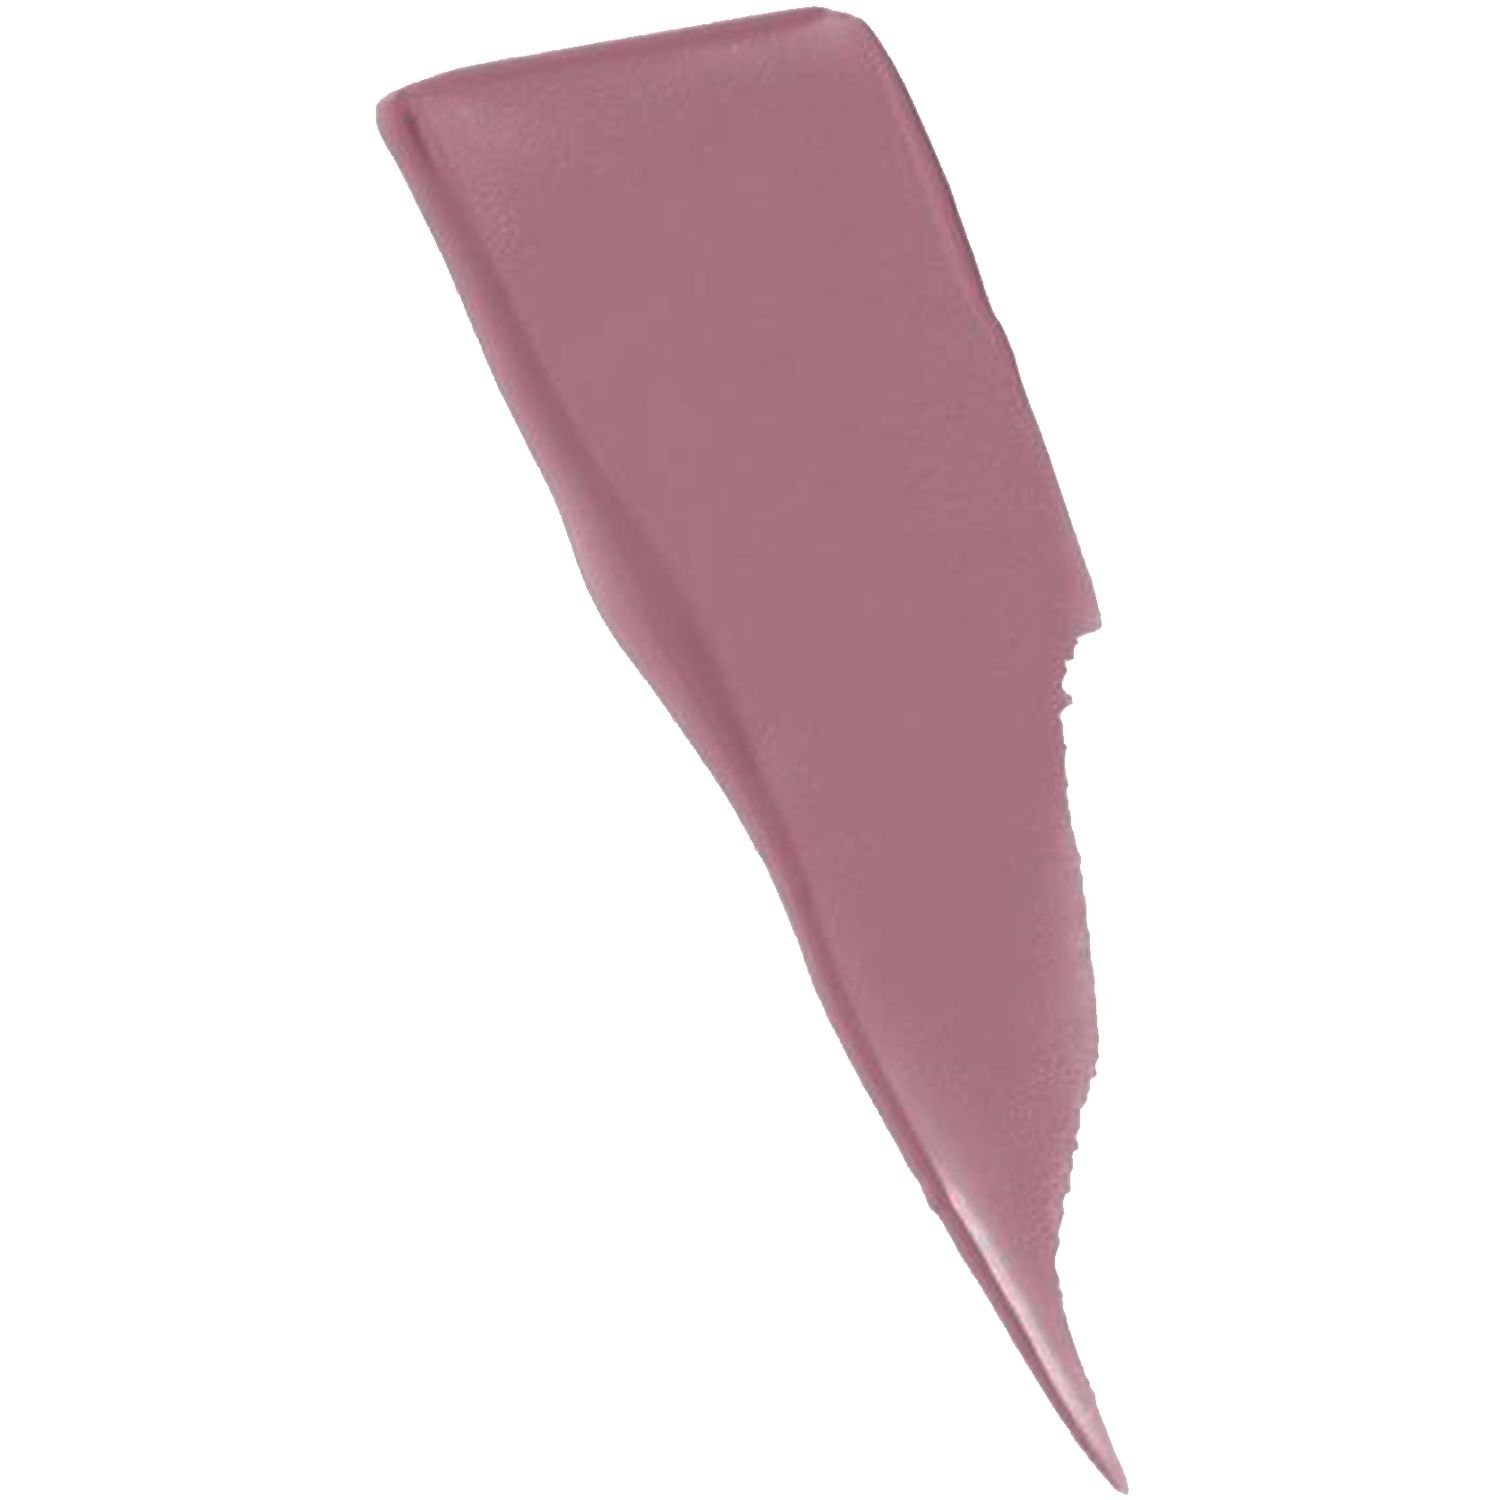 Рідка помада для губ Maybelline New York Super Stay Matte Ink, відтінок 180 (Рожевий), 5 мл (B3299900) - фото 2